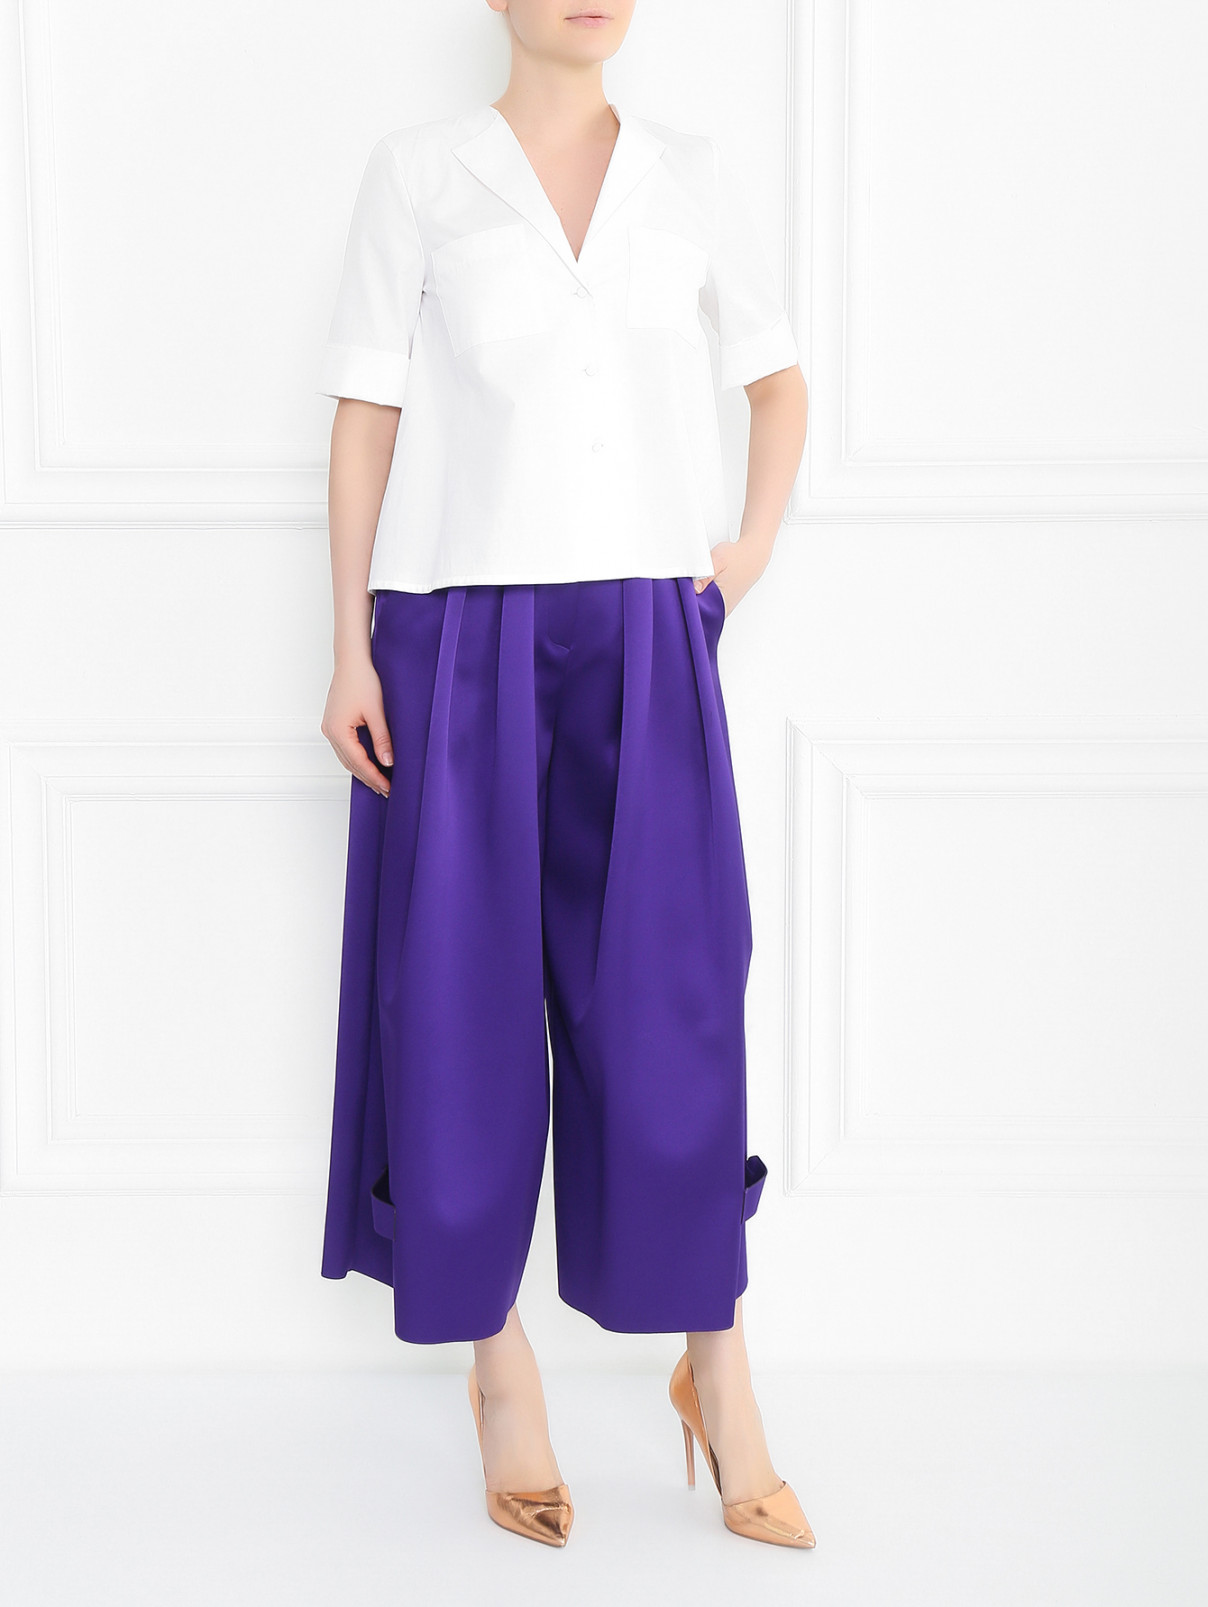 Широкие брюки со складками Emporio Armani  –  Модель Общий вид  – Цвет:  Фиолетовый